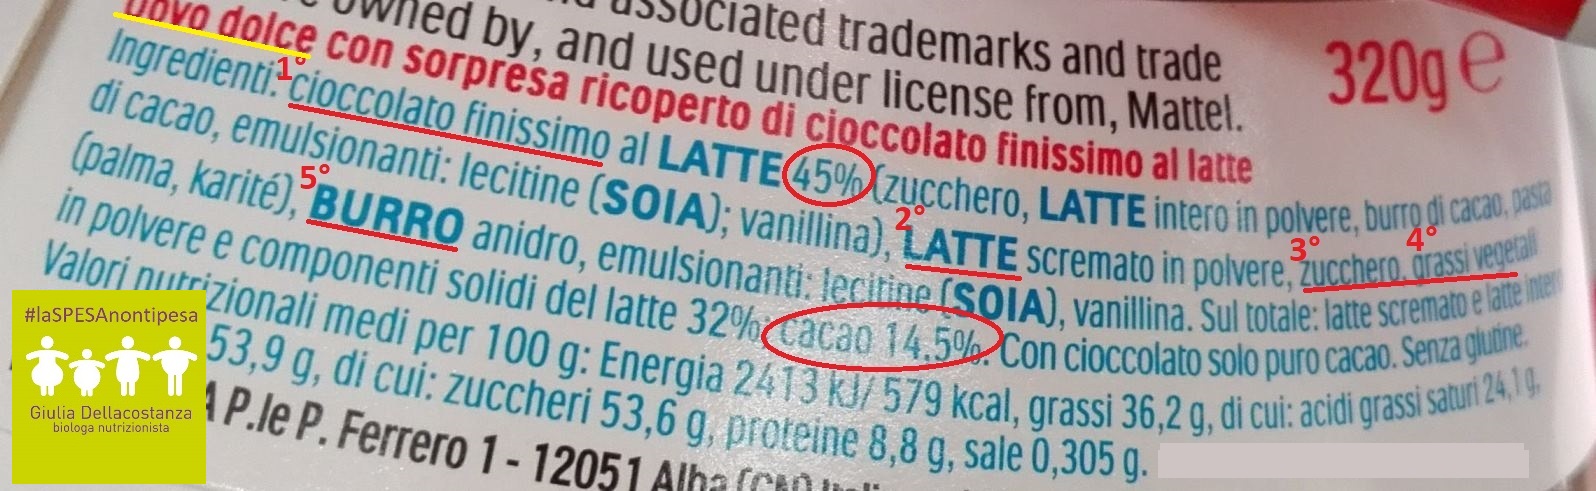 Etichetta degli ingredienti Uovo di Pasqua Kinder